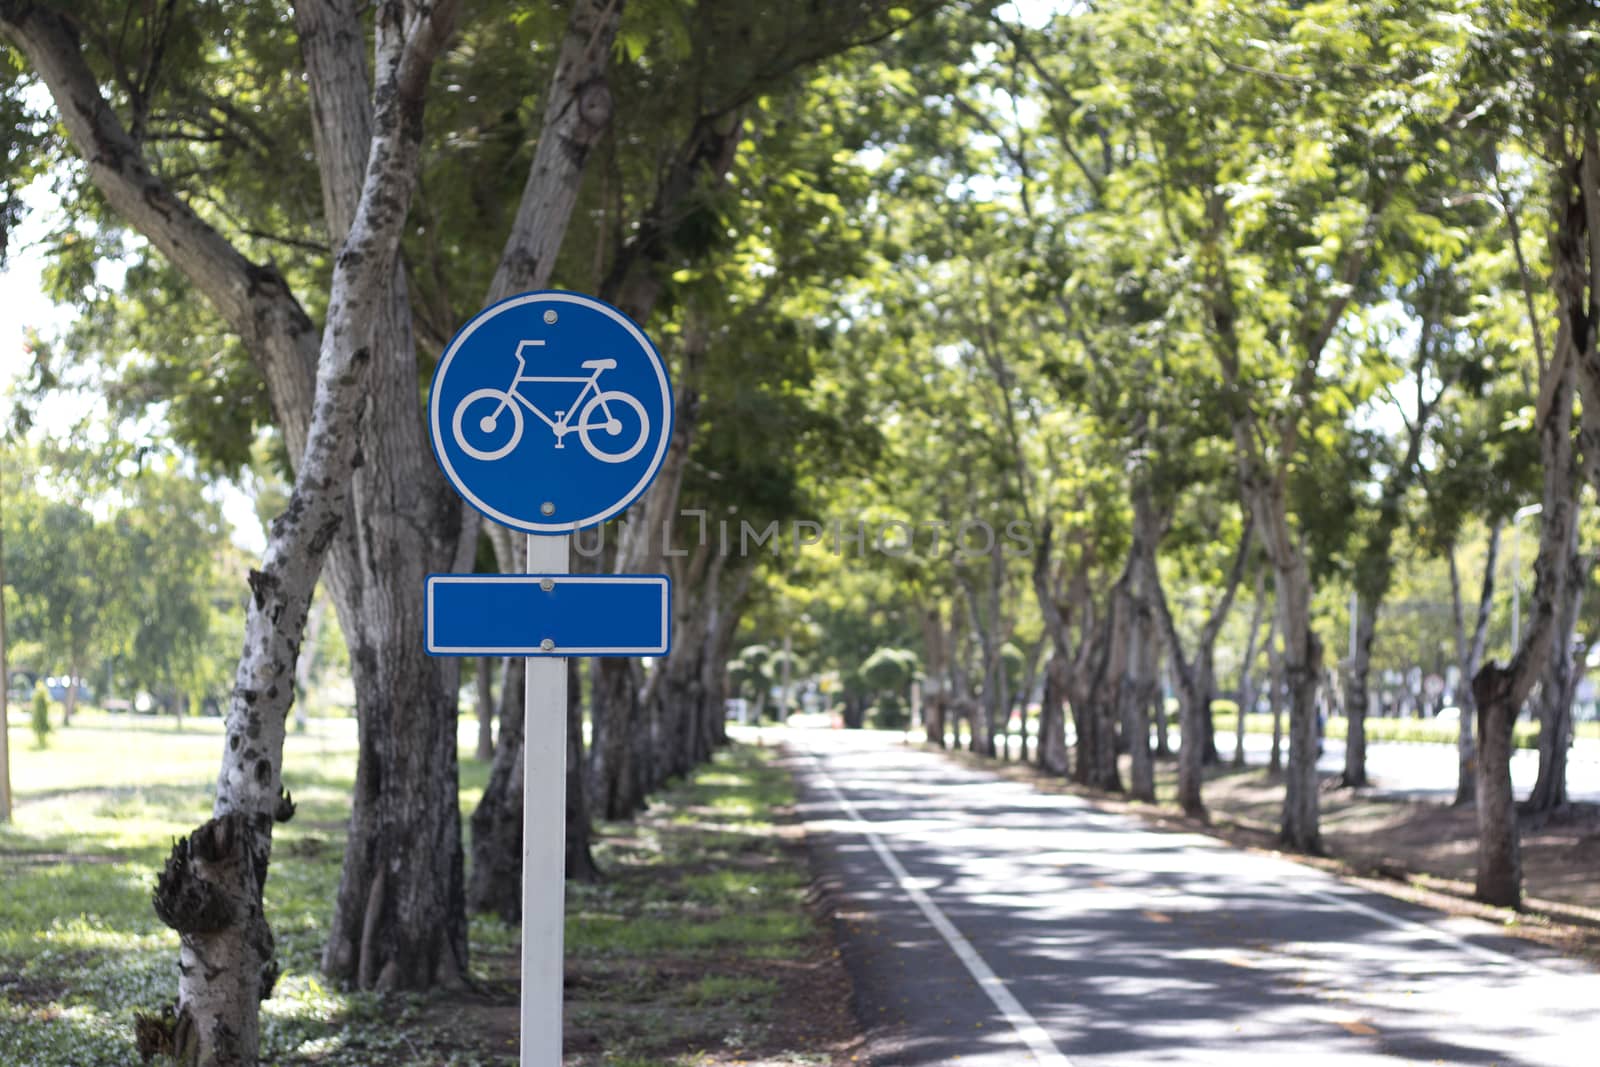 Signboard showing bike lane in a park.